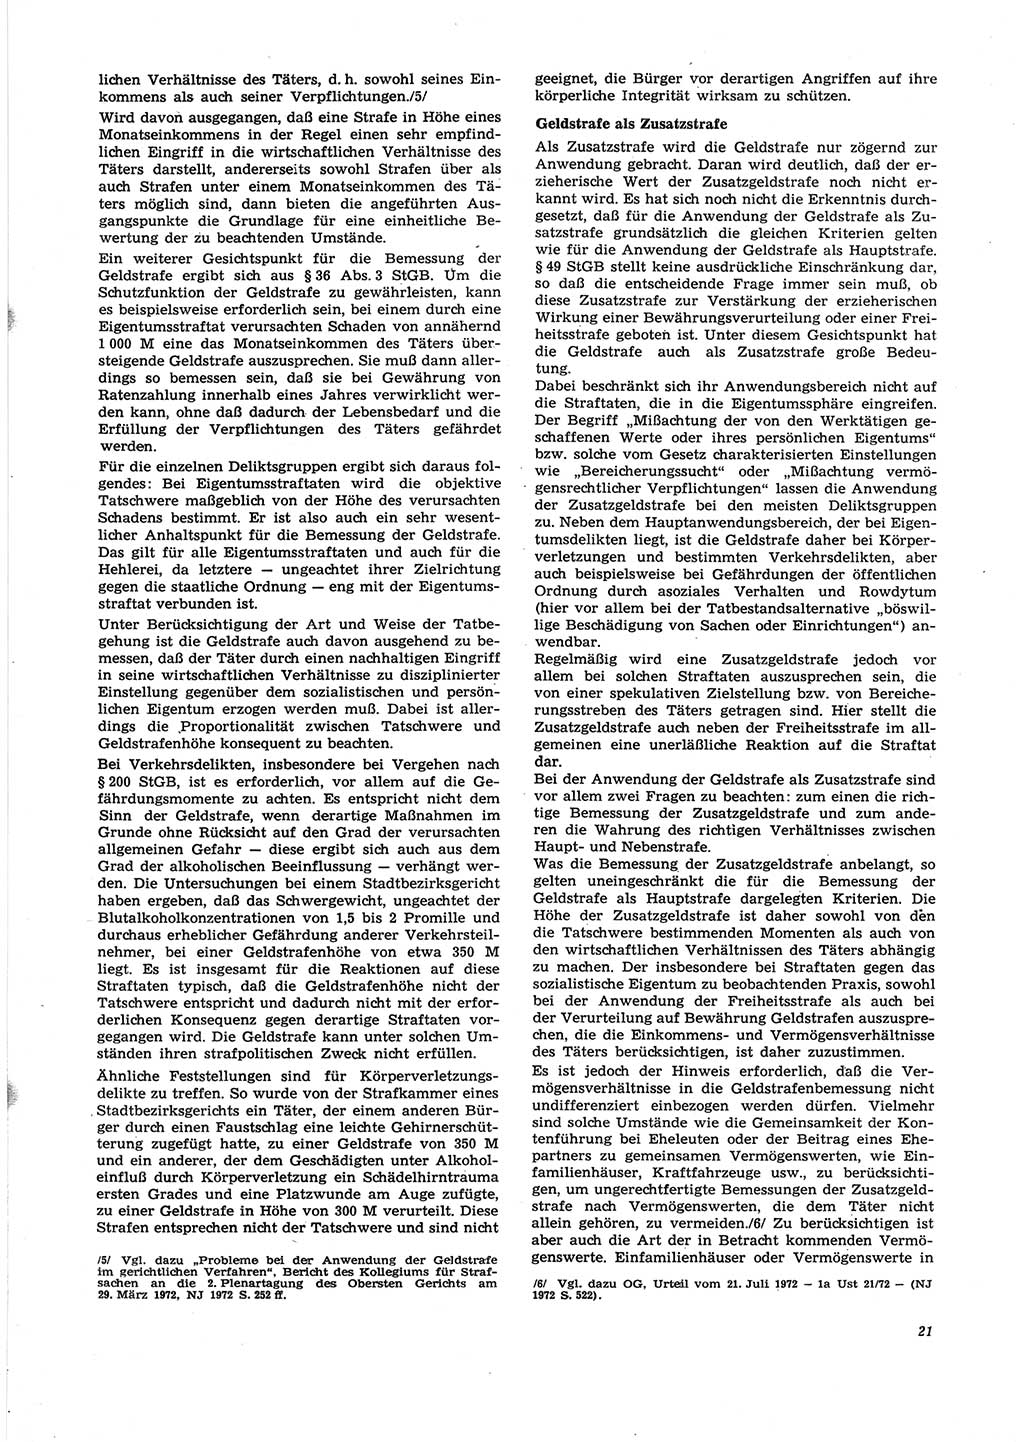 Neue Justiz (NJ), Zeitschrift für Recht und Rechtswissenschaft [Deutsche Demokratische Republik (DDR)], 27. Jahrgang 1973, Seite 21 (NJ DDR 1973, S. 21)